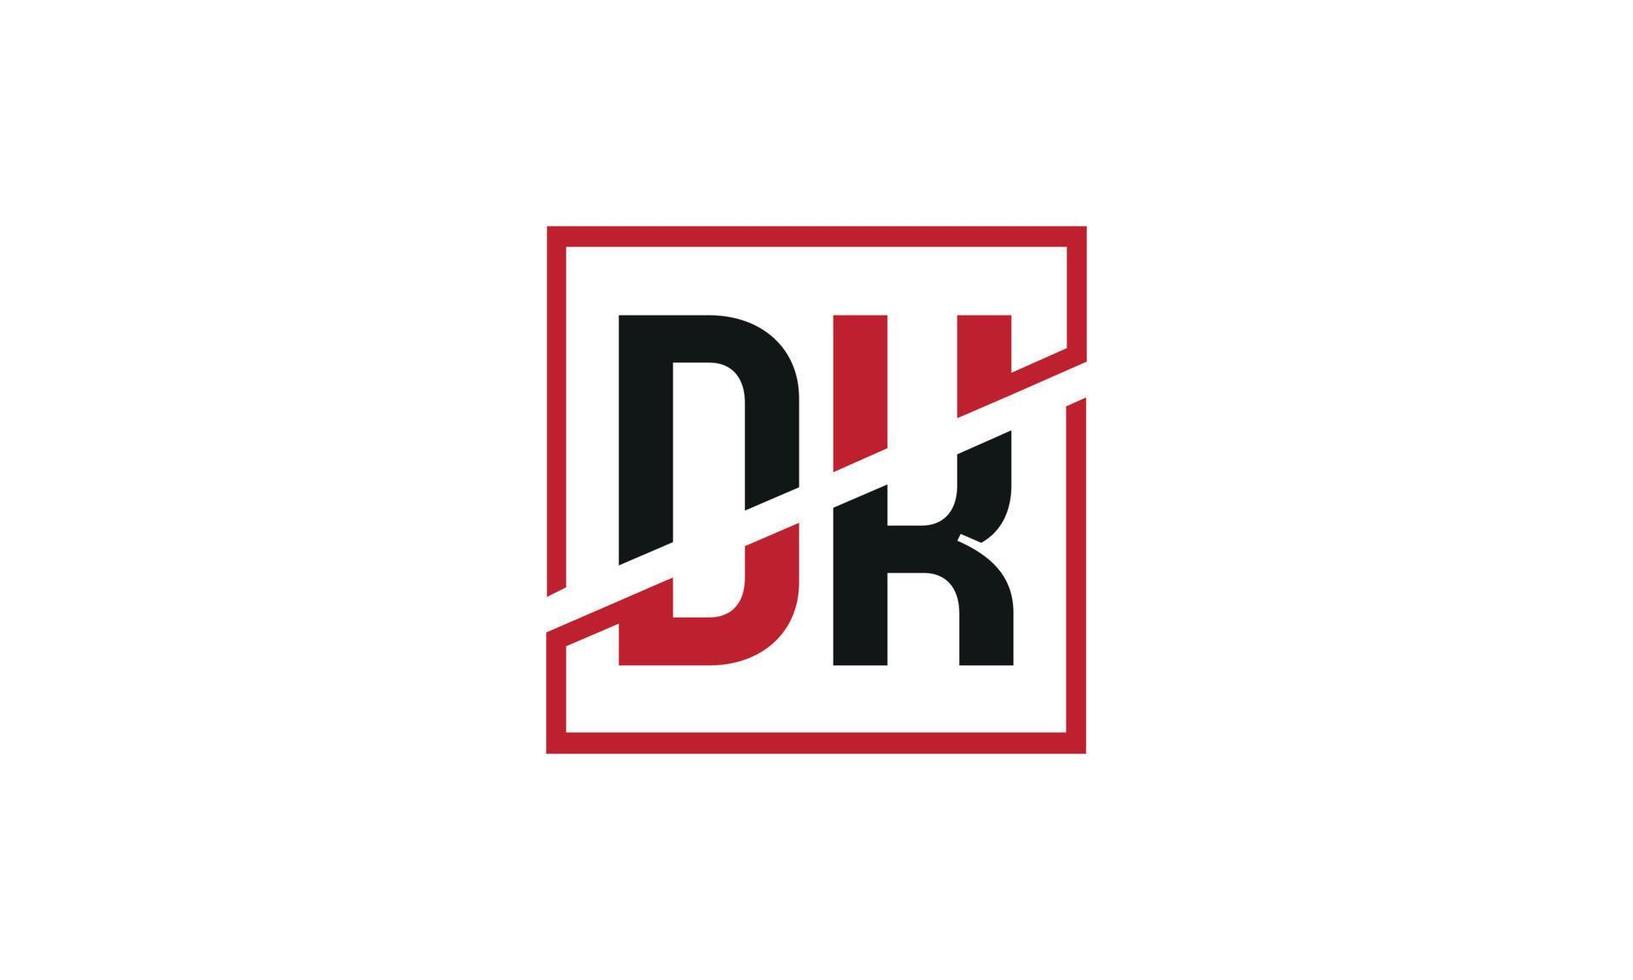 création de logo dk. conception initiale du monogramme du logo de la lettre dk en noir et rouge avec une forme carrée. vecteur pro